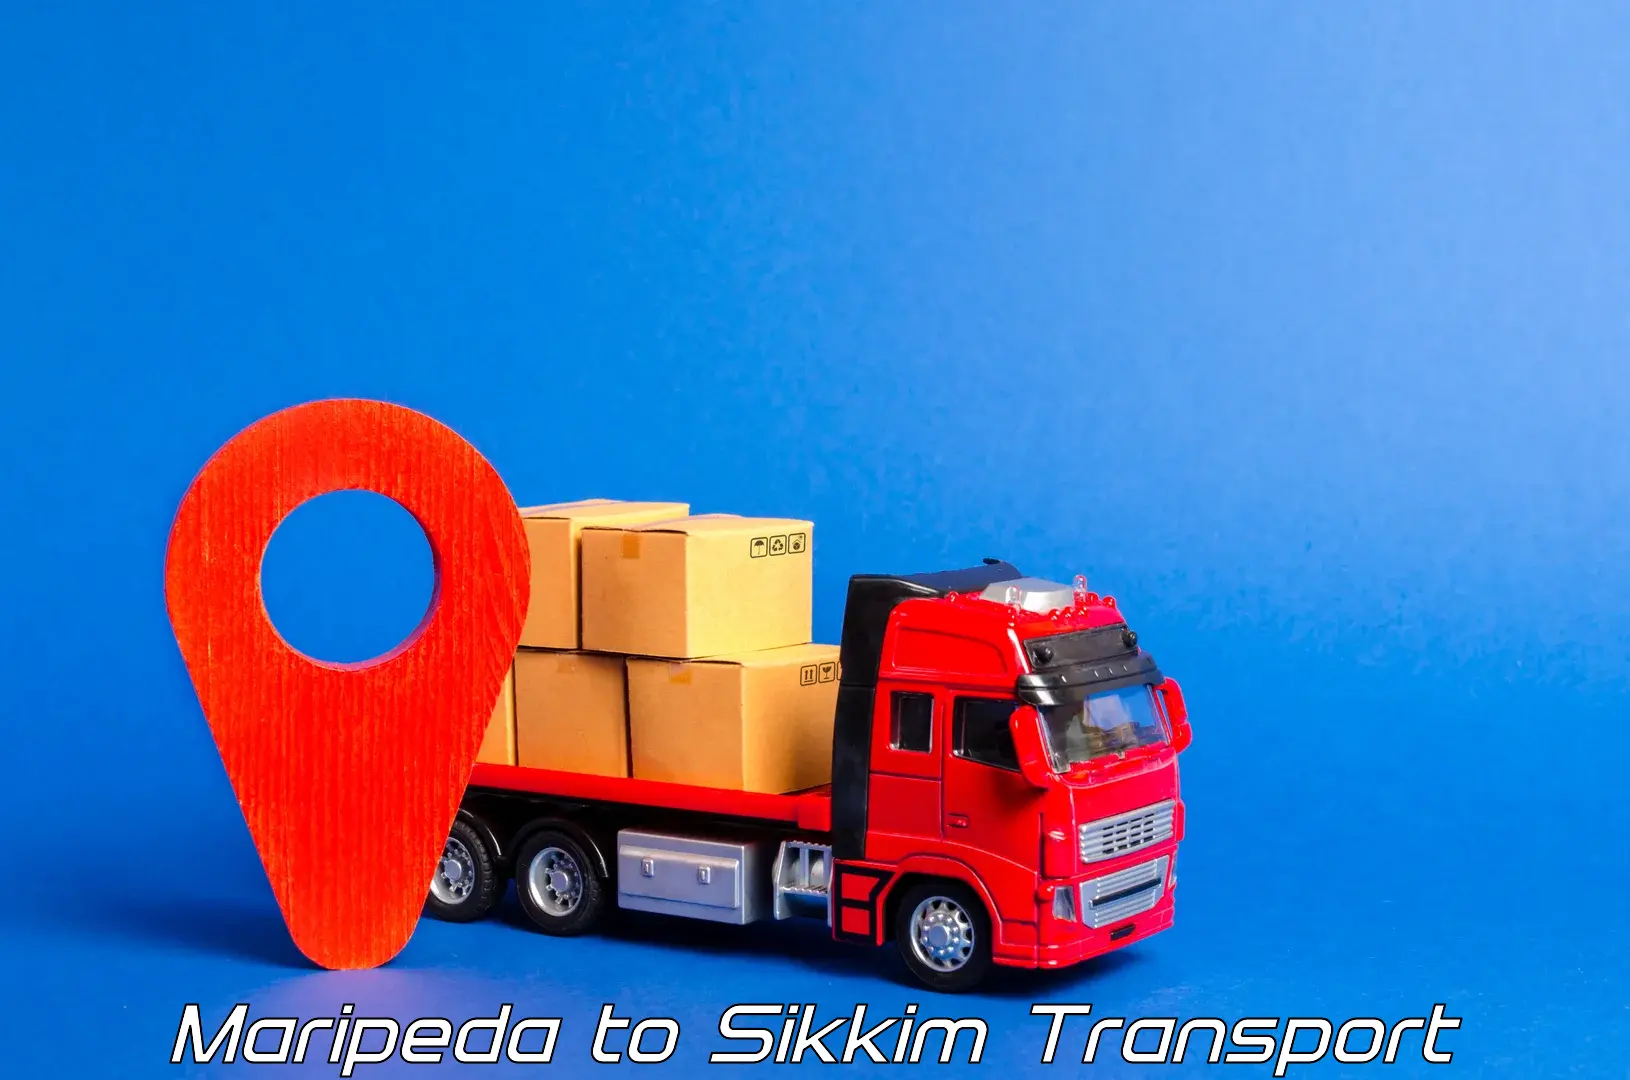 Bike transport service Maripeda to North Sikkim